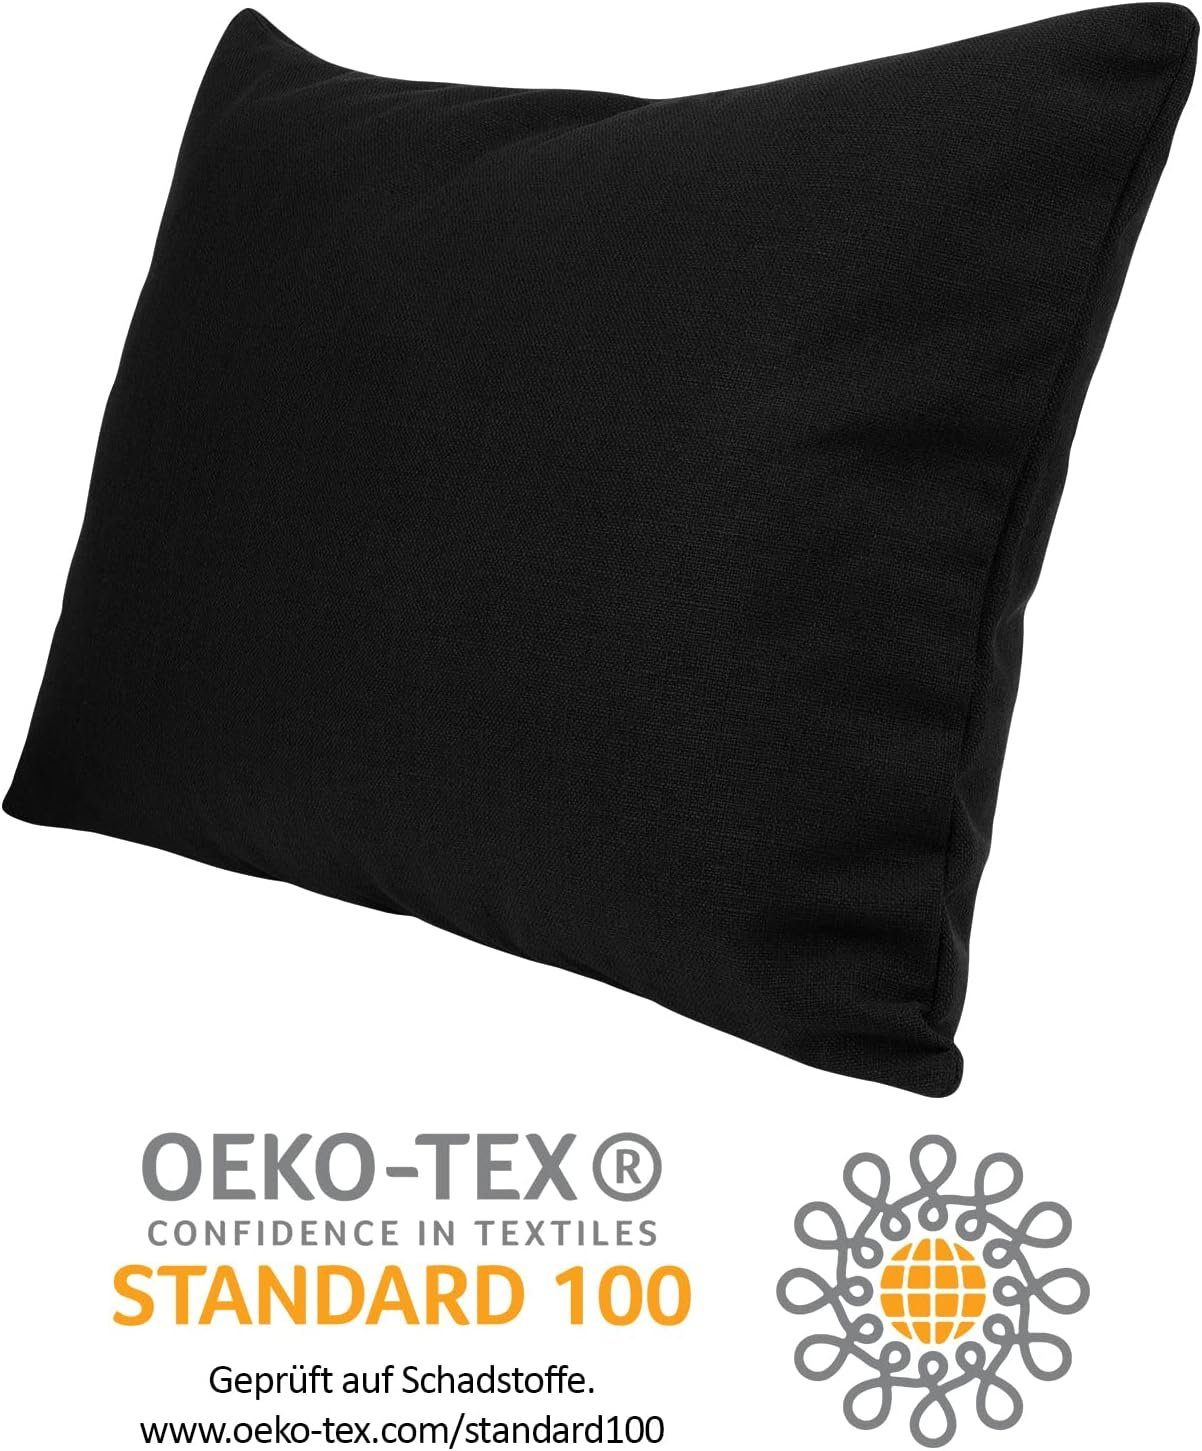 Selfitex Dekokissen XXL 60x80 inkl. Art für Rückenkissen, schwarz kuschelweiches als jeglicher Sofakissen, Couch, Lesekissen, Füllkissen Bett oder Polster